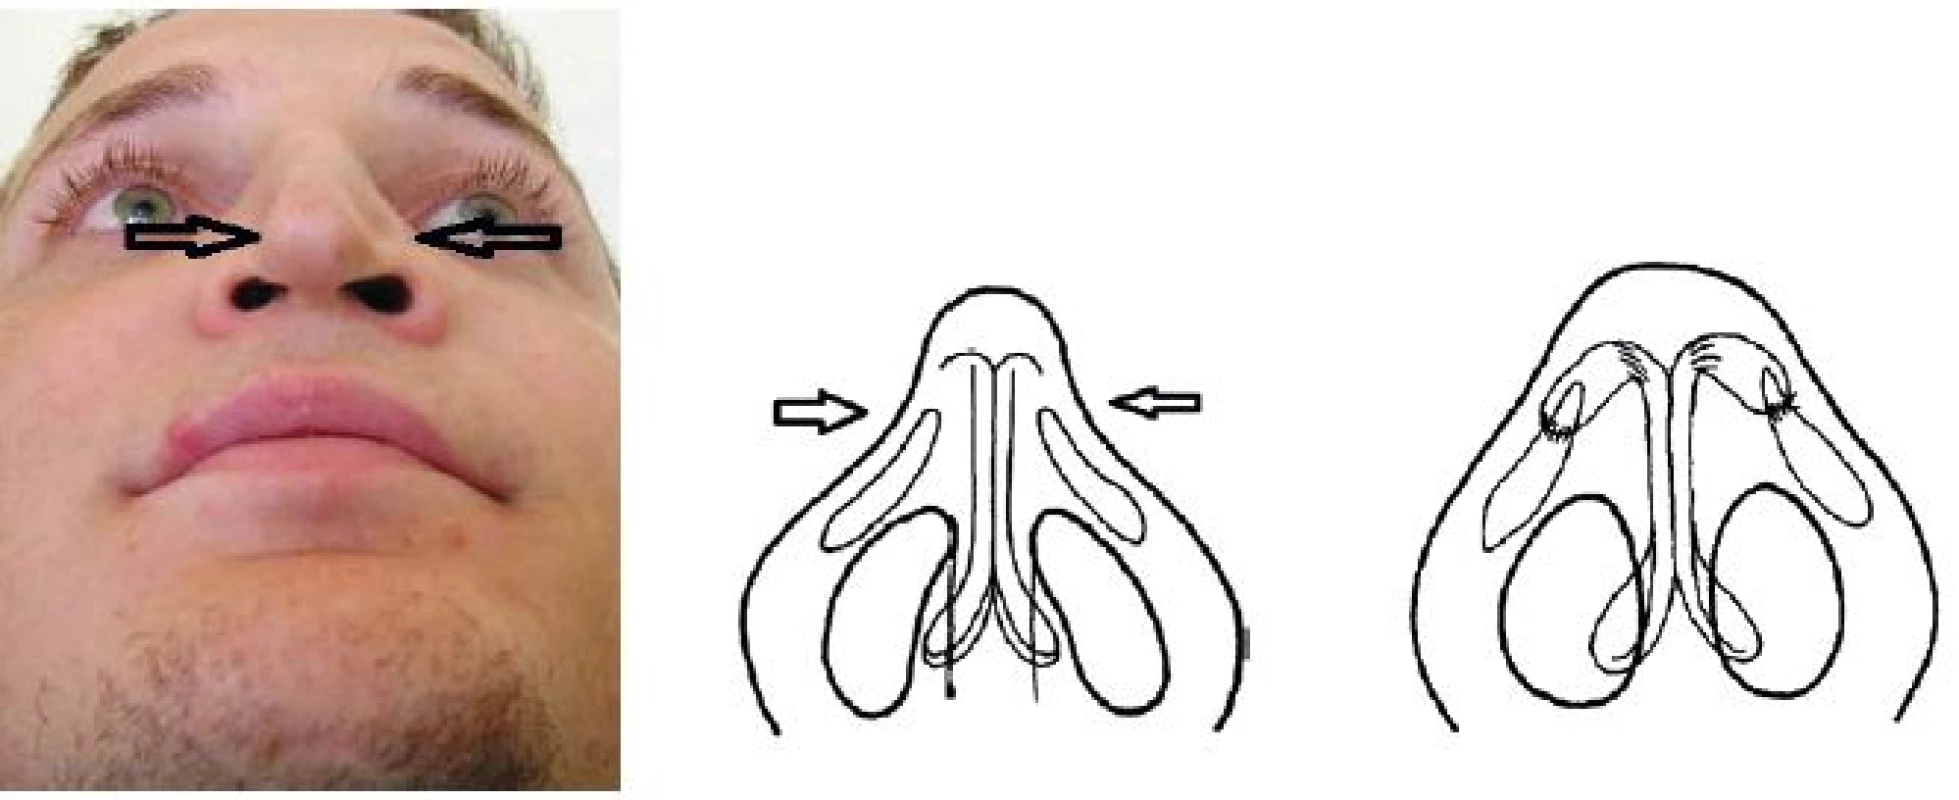 Vľavo: deformácia špičky po nadmernej resekcii alárnych chrupiek. V strede: podstata deformity, chýbanie časti alárnej chrupky. Vpravo: augmentácia chrupkovým štepom medzi dómom a laterálnym ramenom